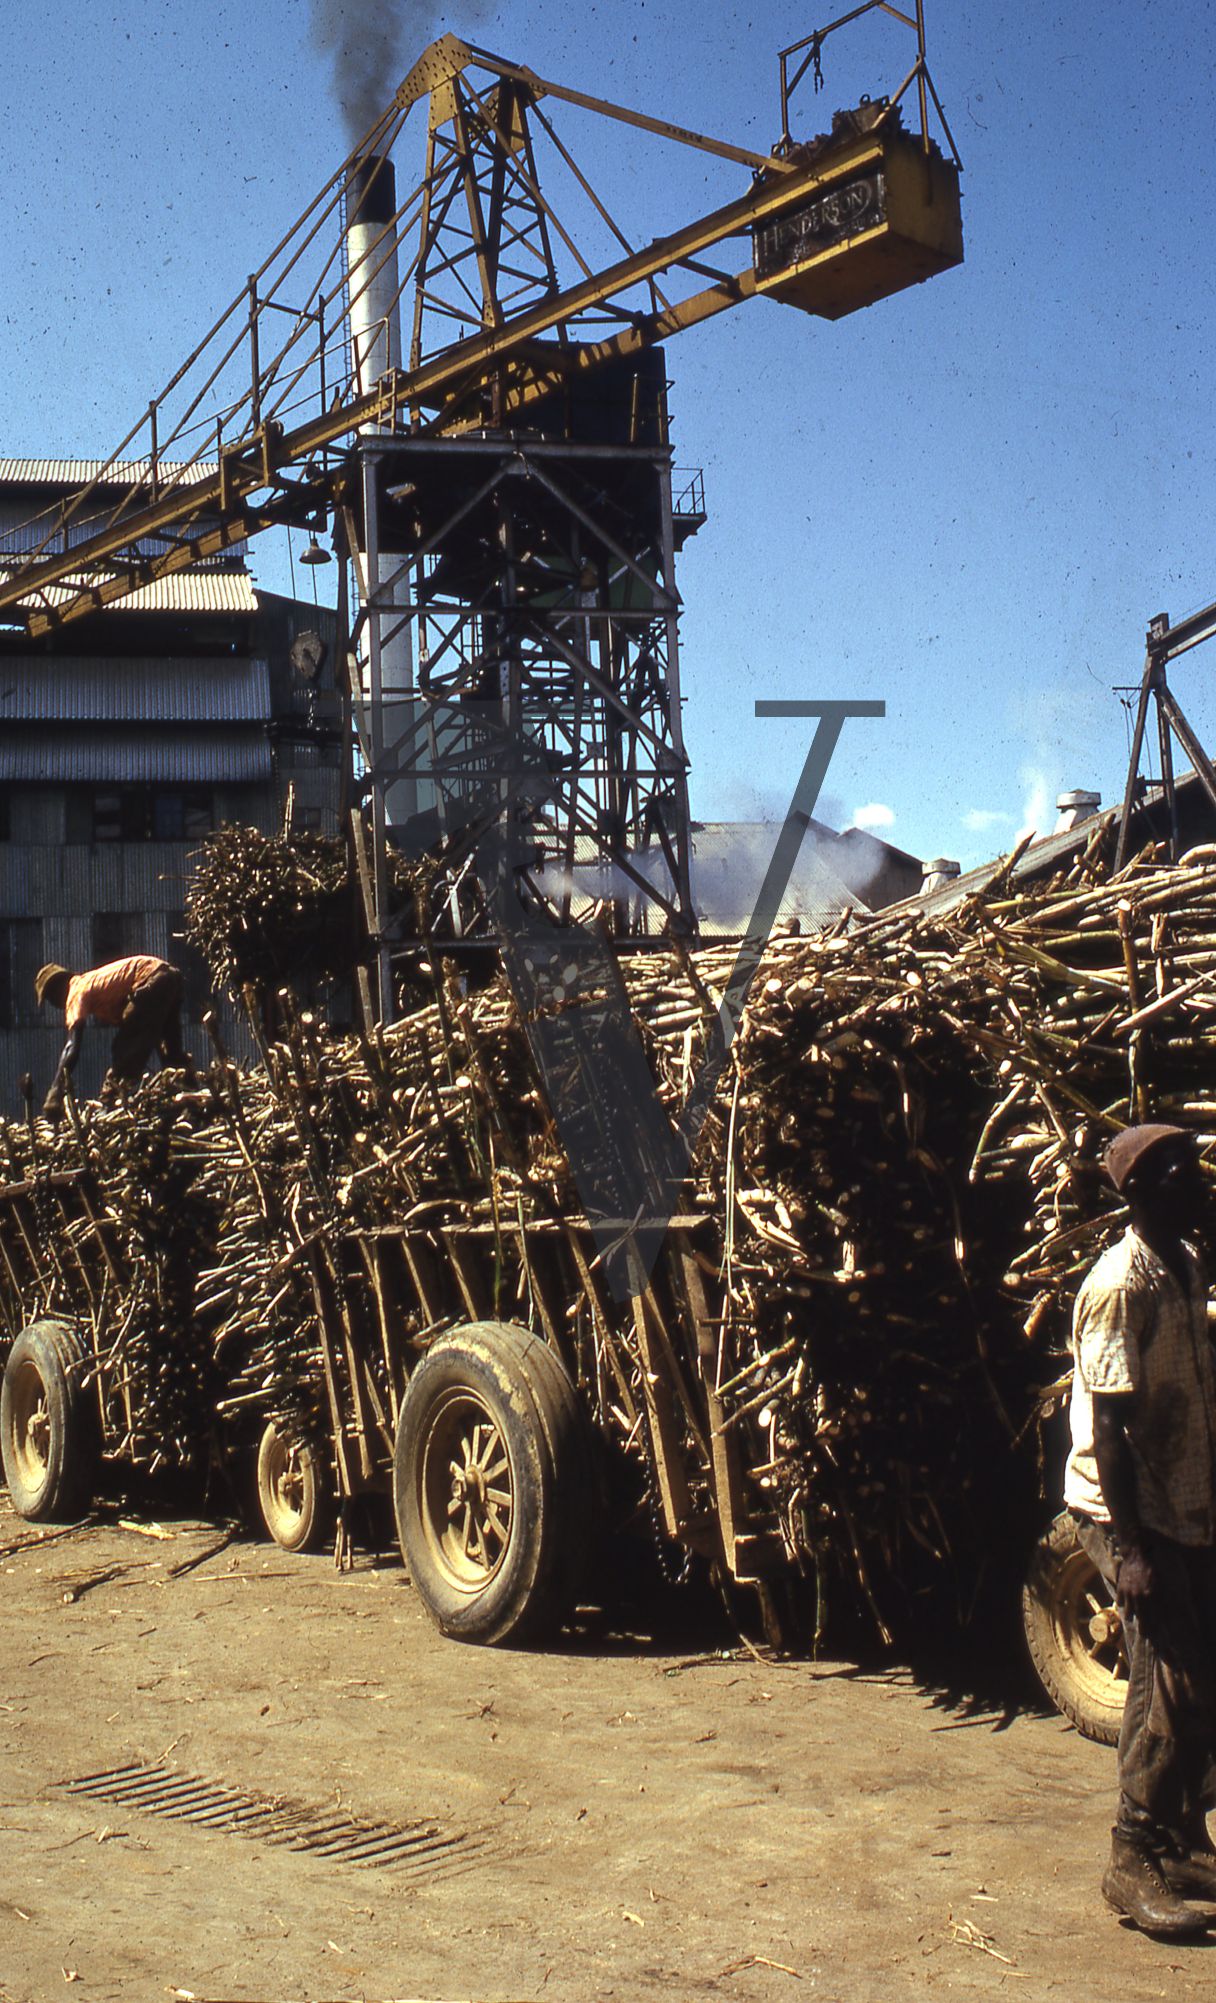 Jamaica, Machinery and straw.